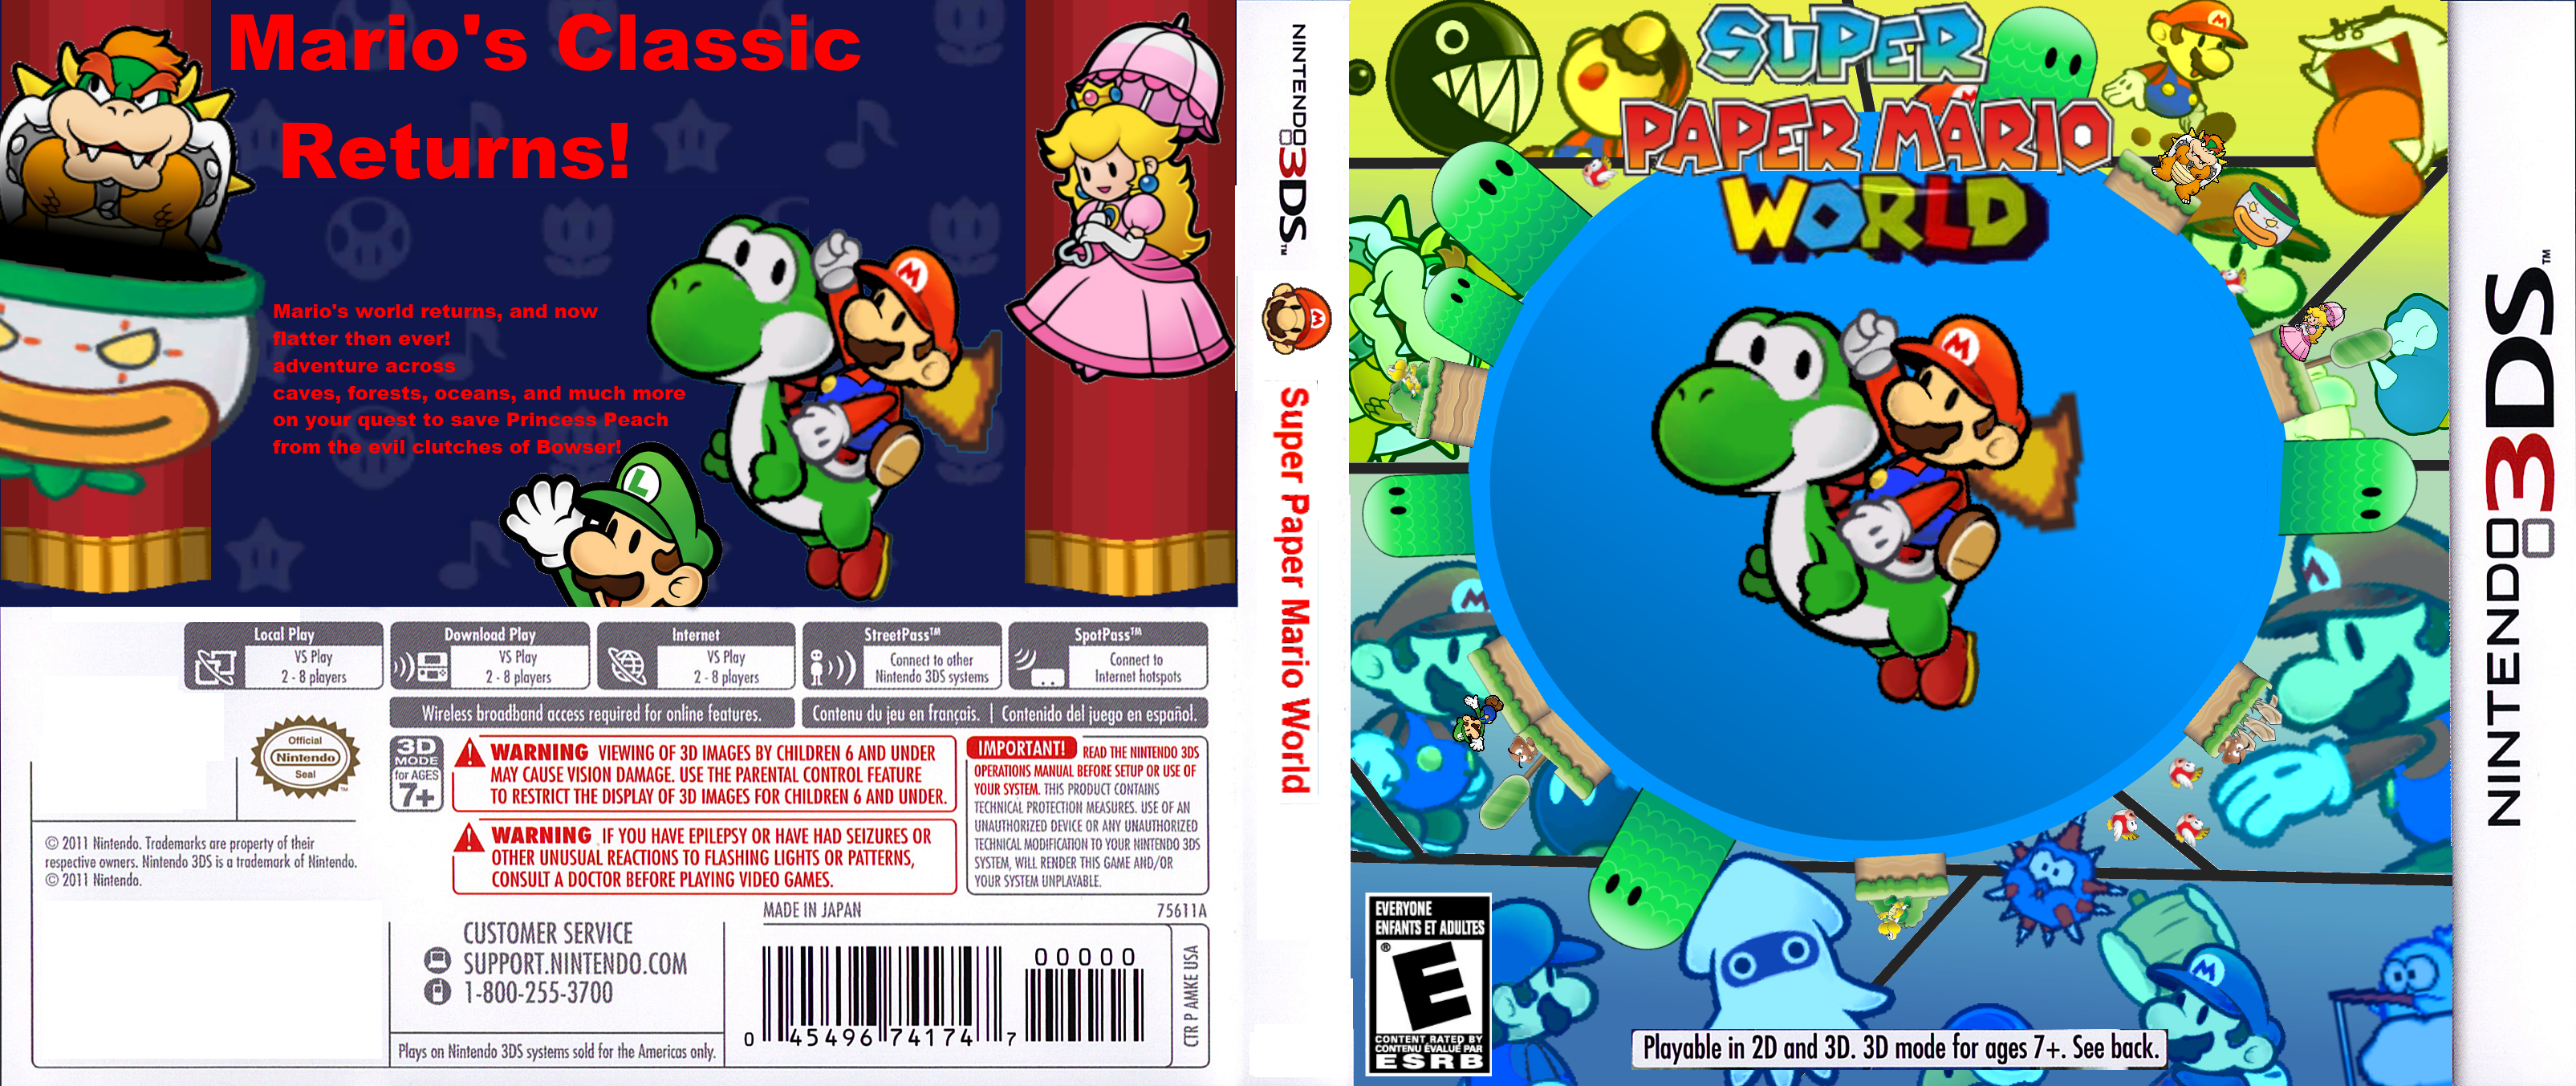 Super Paper Mario World box cover